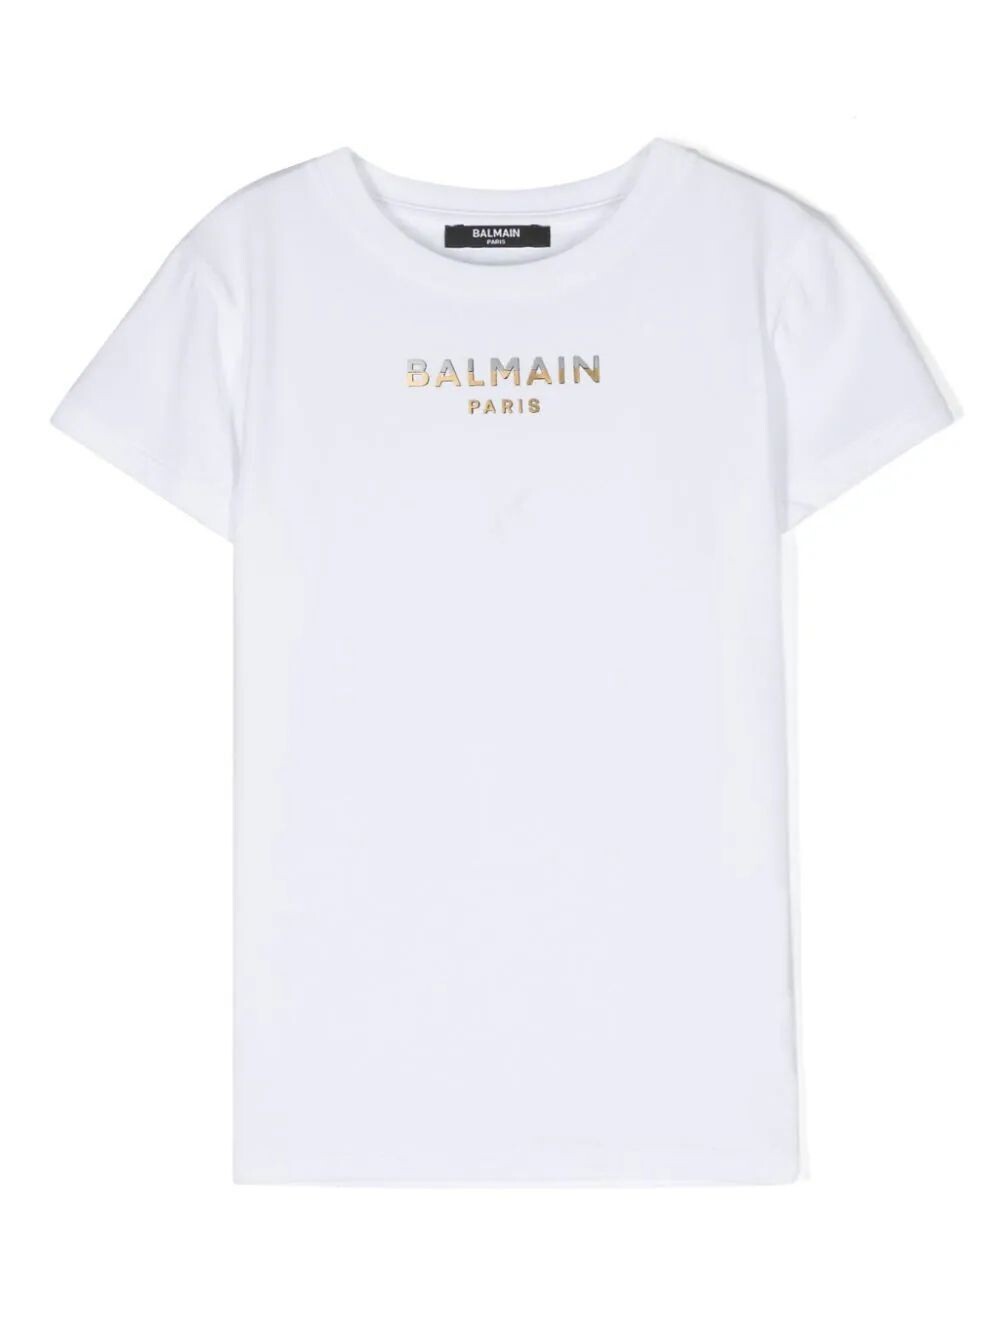 Balmain - T-sihrt bianca logo oro argento, Size: 13 anni